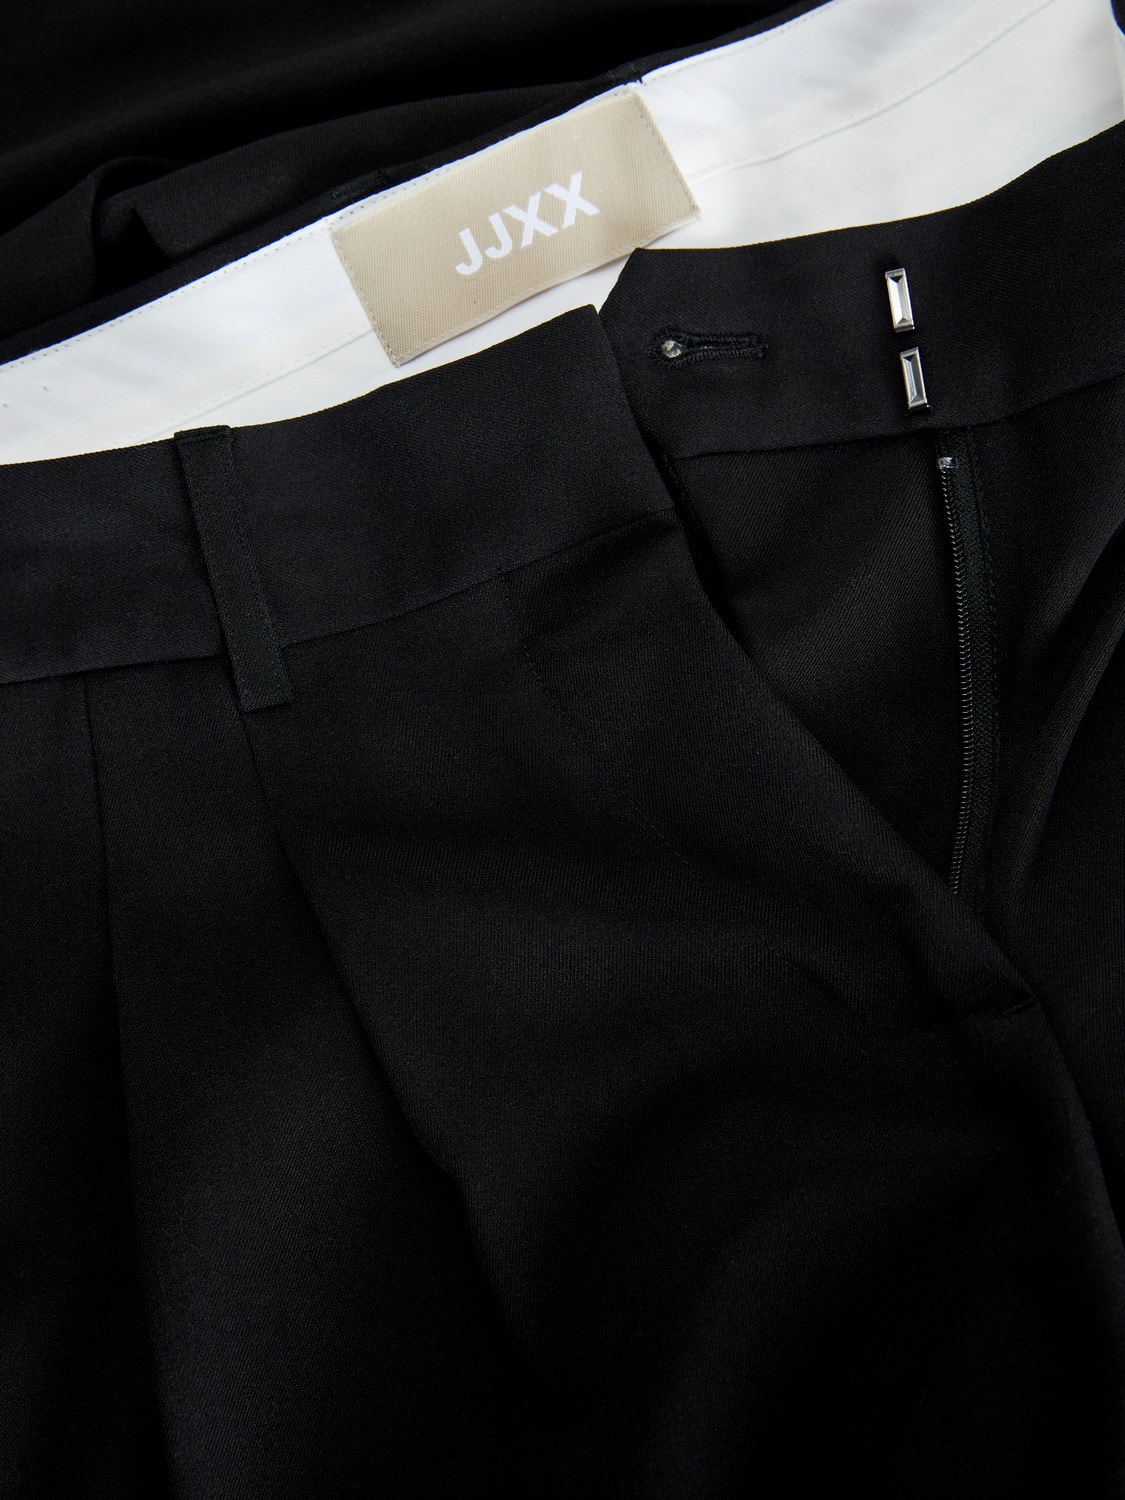 JJXX JXMARY Classic trousers -Black - 12241663